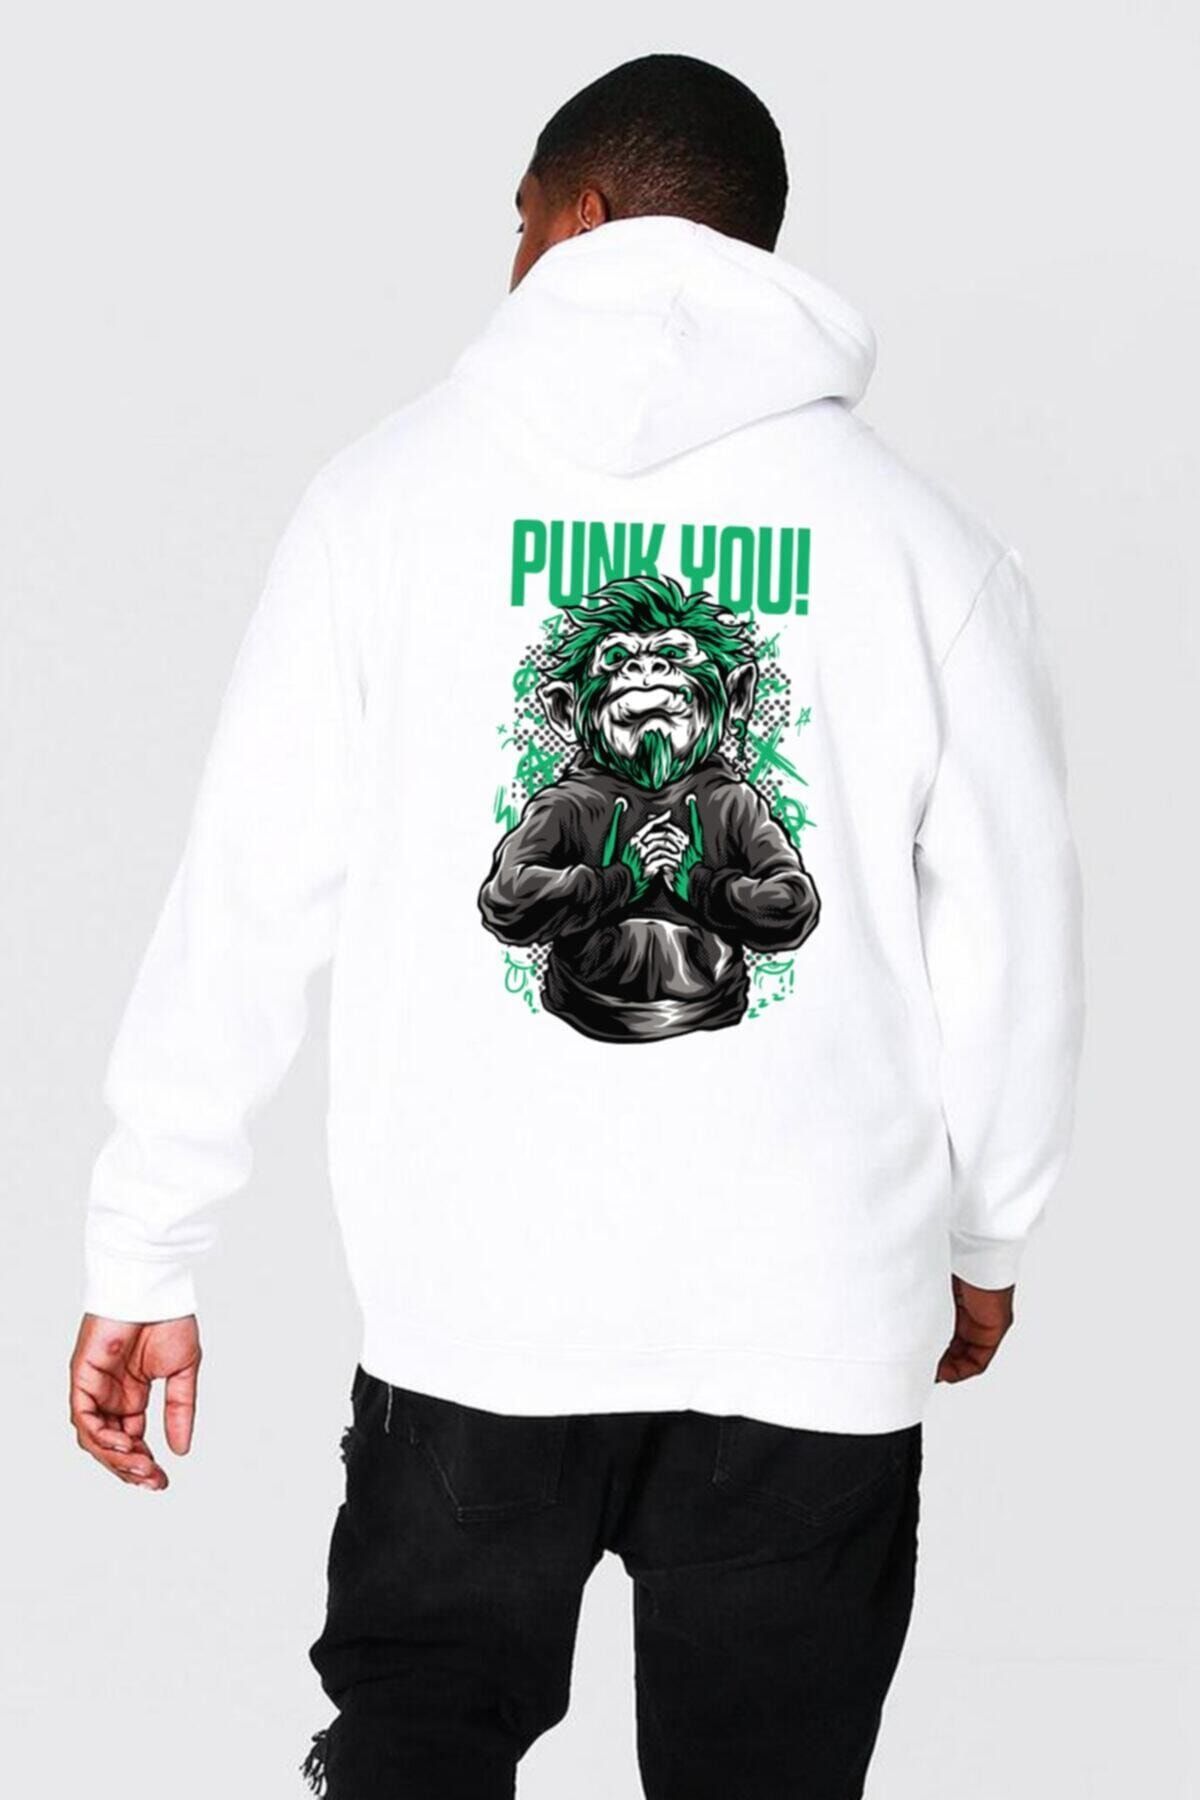 Fumood 3 Iplik Kapüşonlu Oversize Kalıp Hoodie Punk You Tasarımlı Unisex Sweatshirt